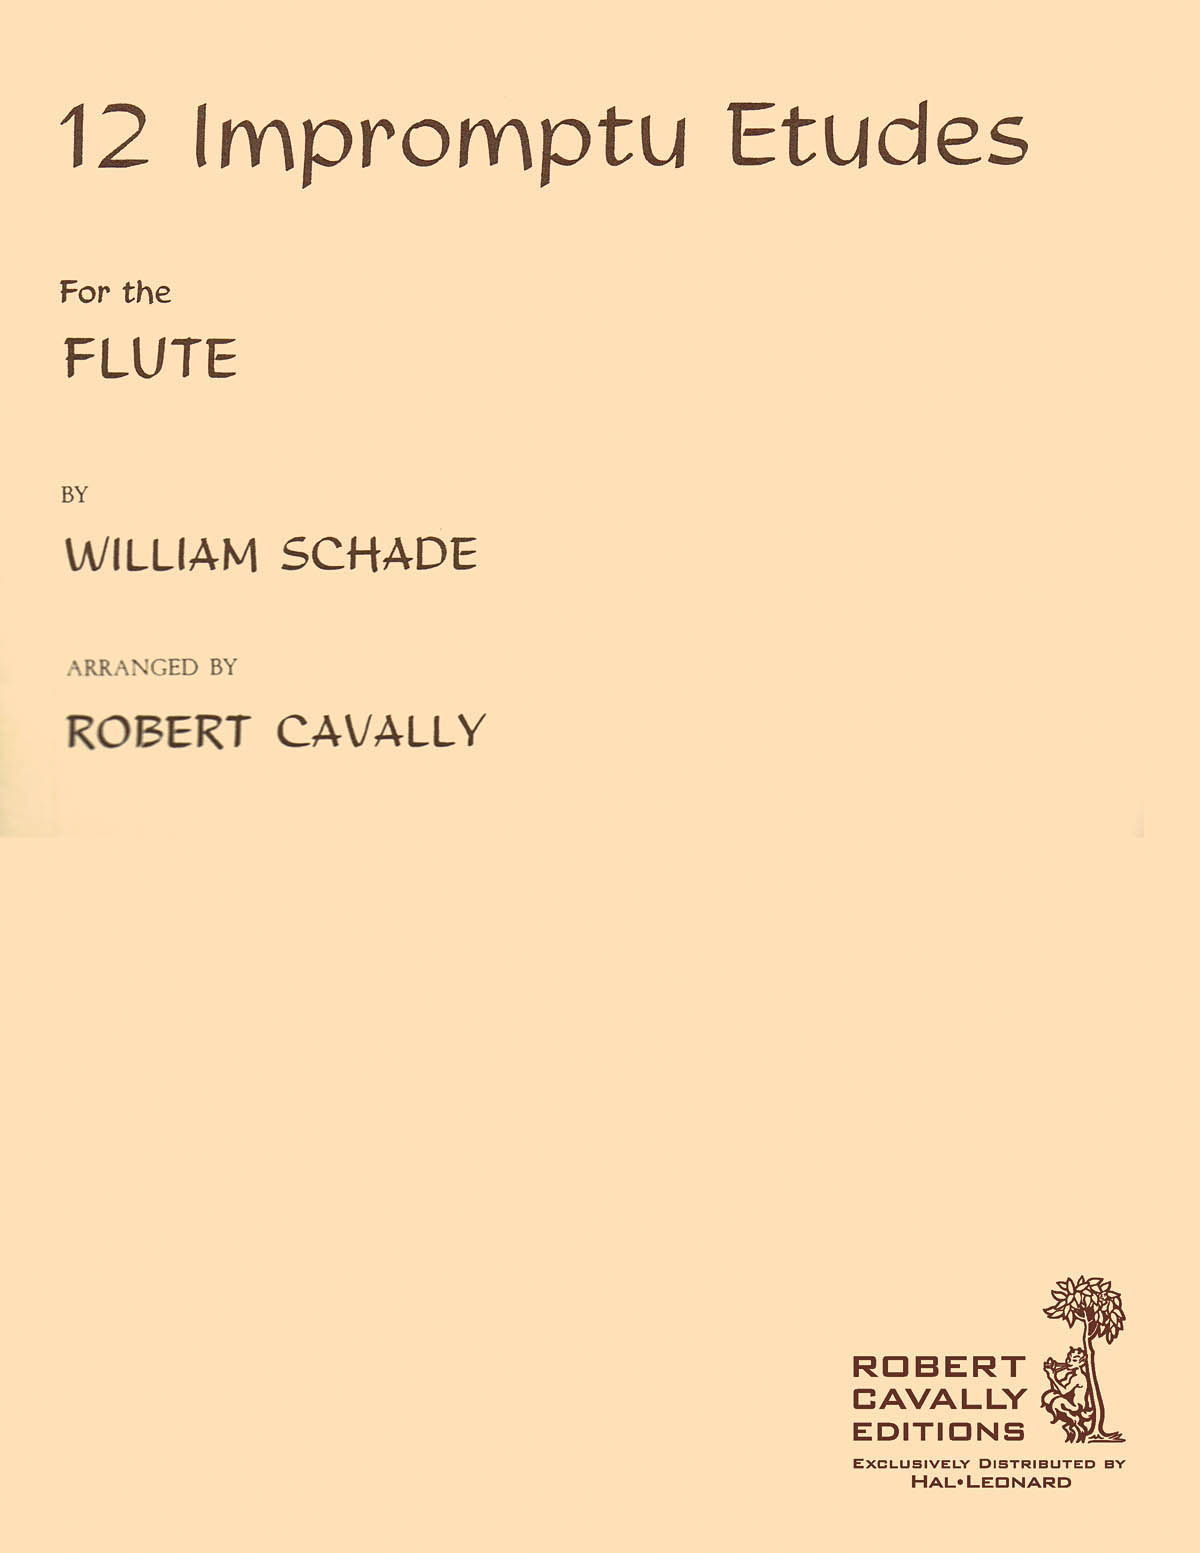 William Schade: 12 Impromptu Etudes for Flute